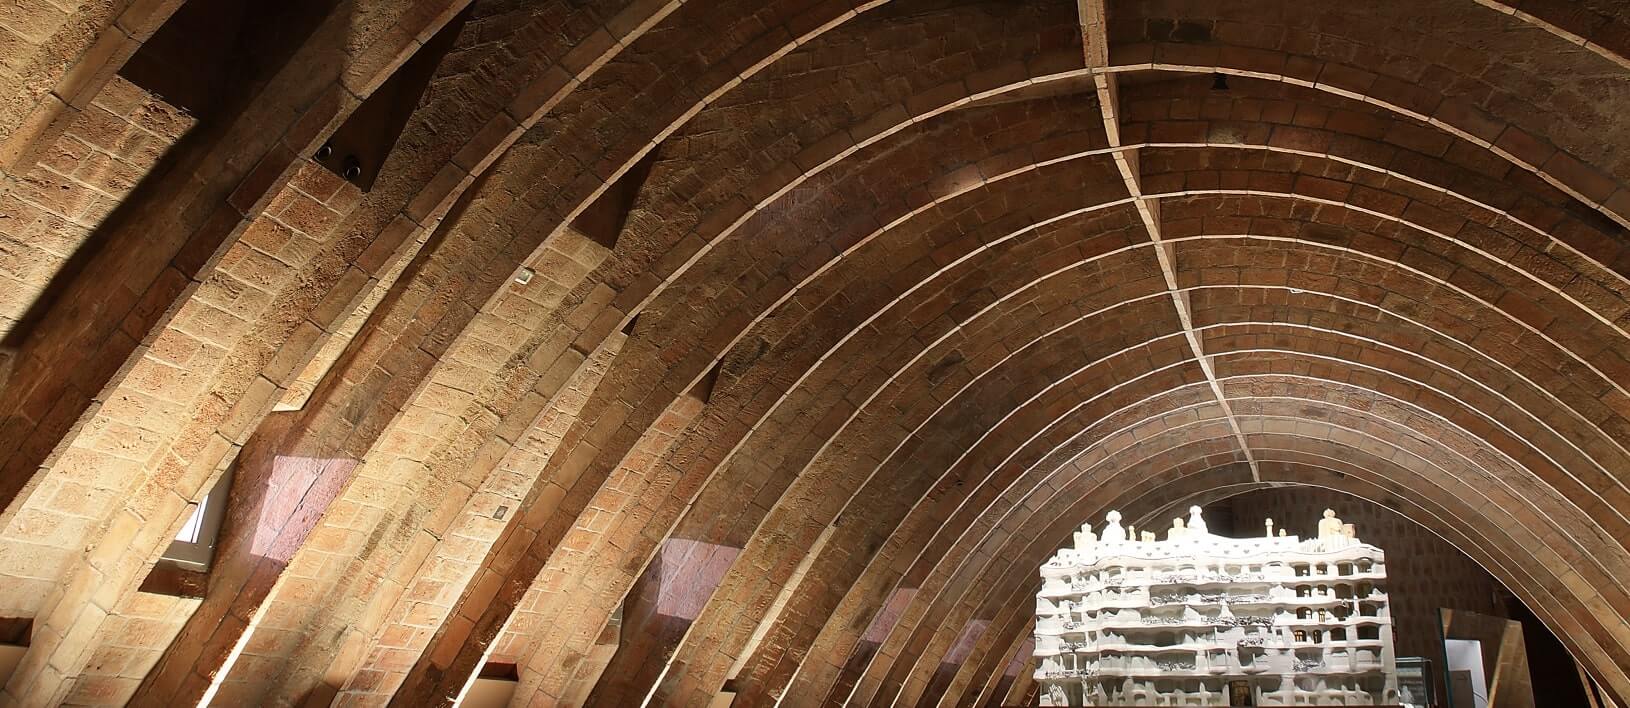 Casa Mila - Museu Gaudí - Àtic de la balena